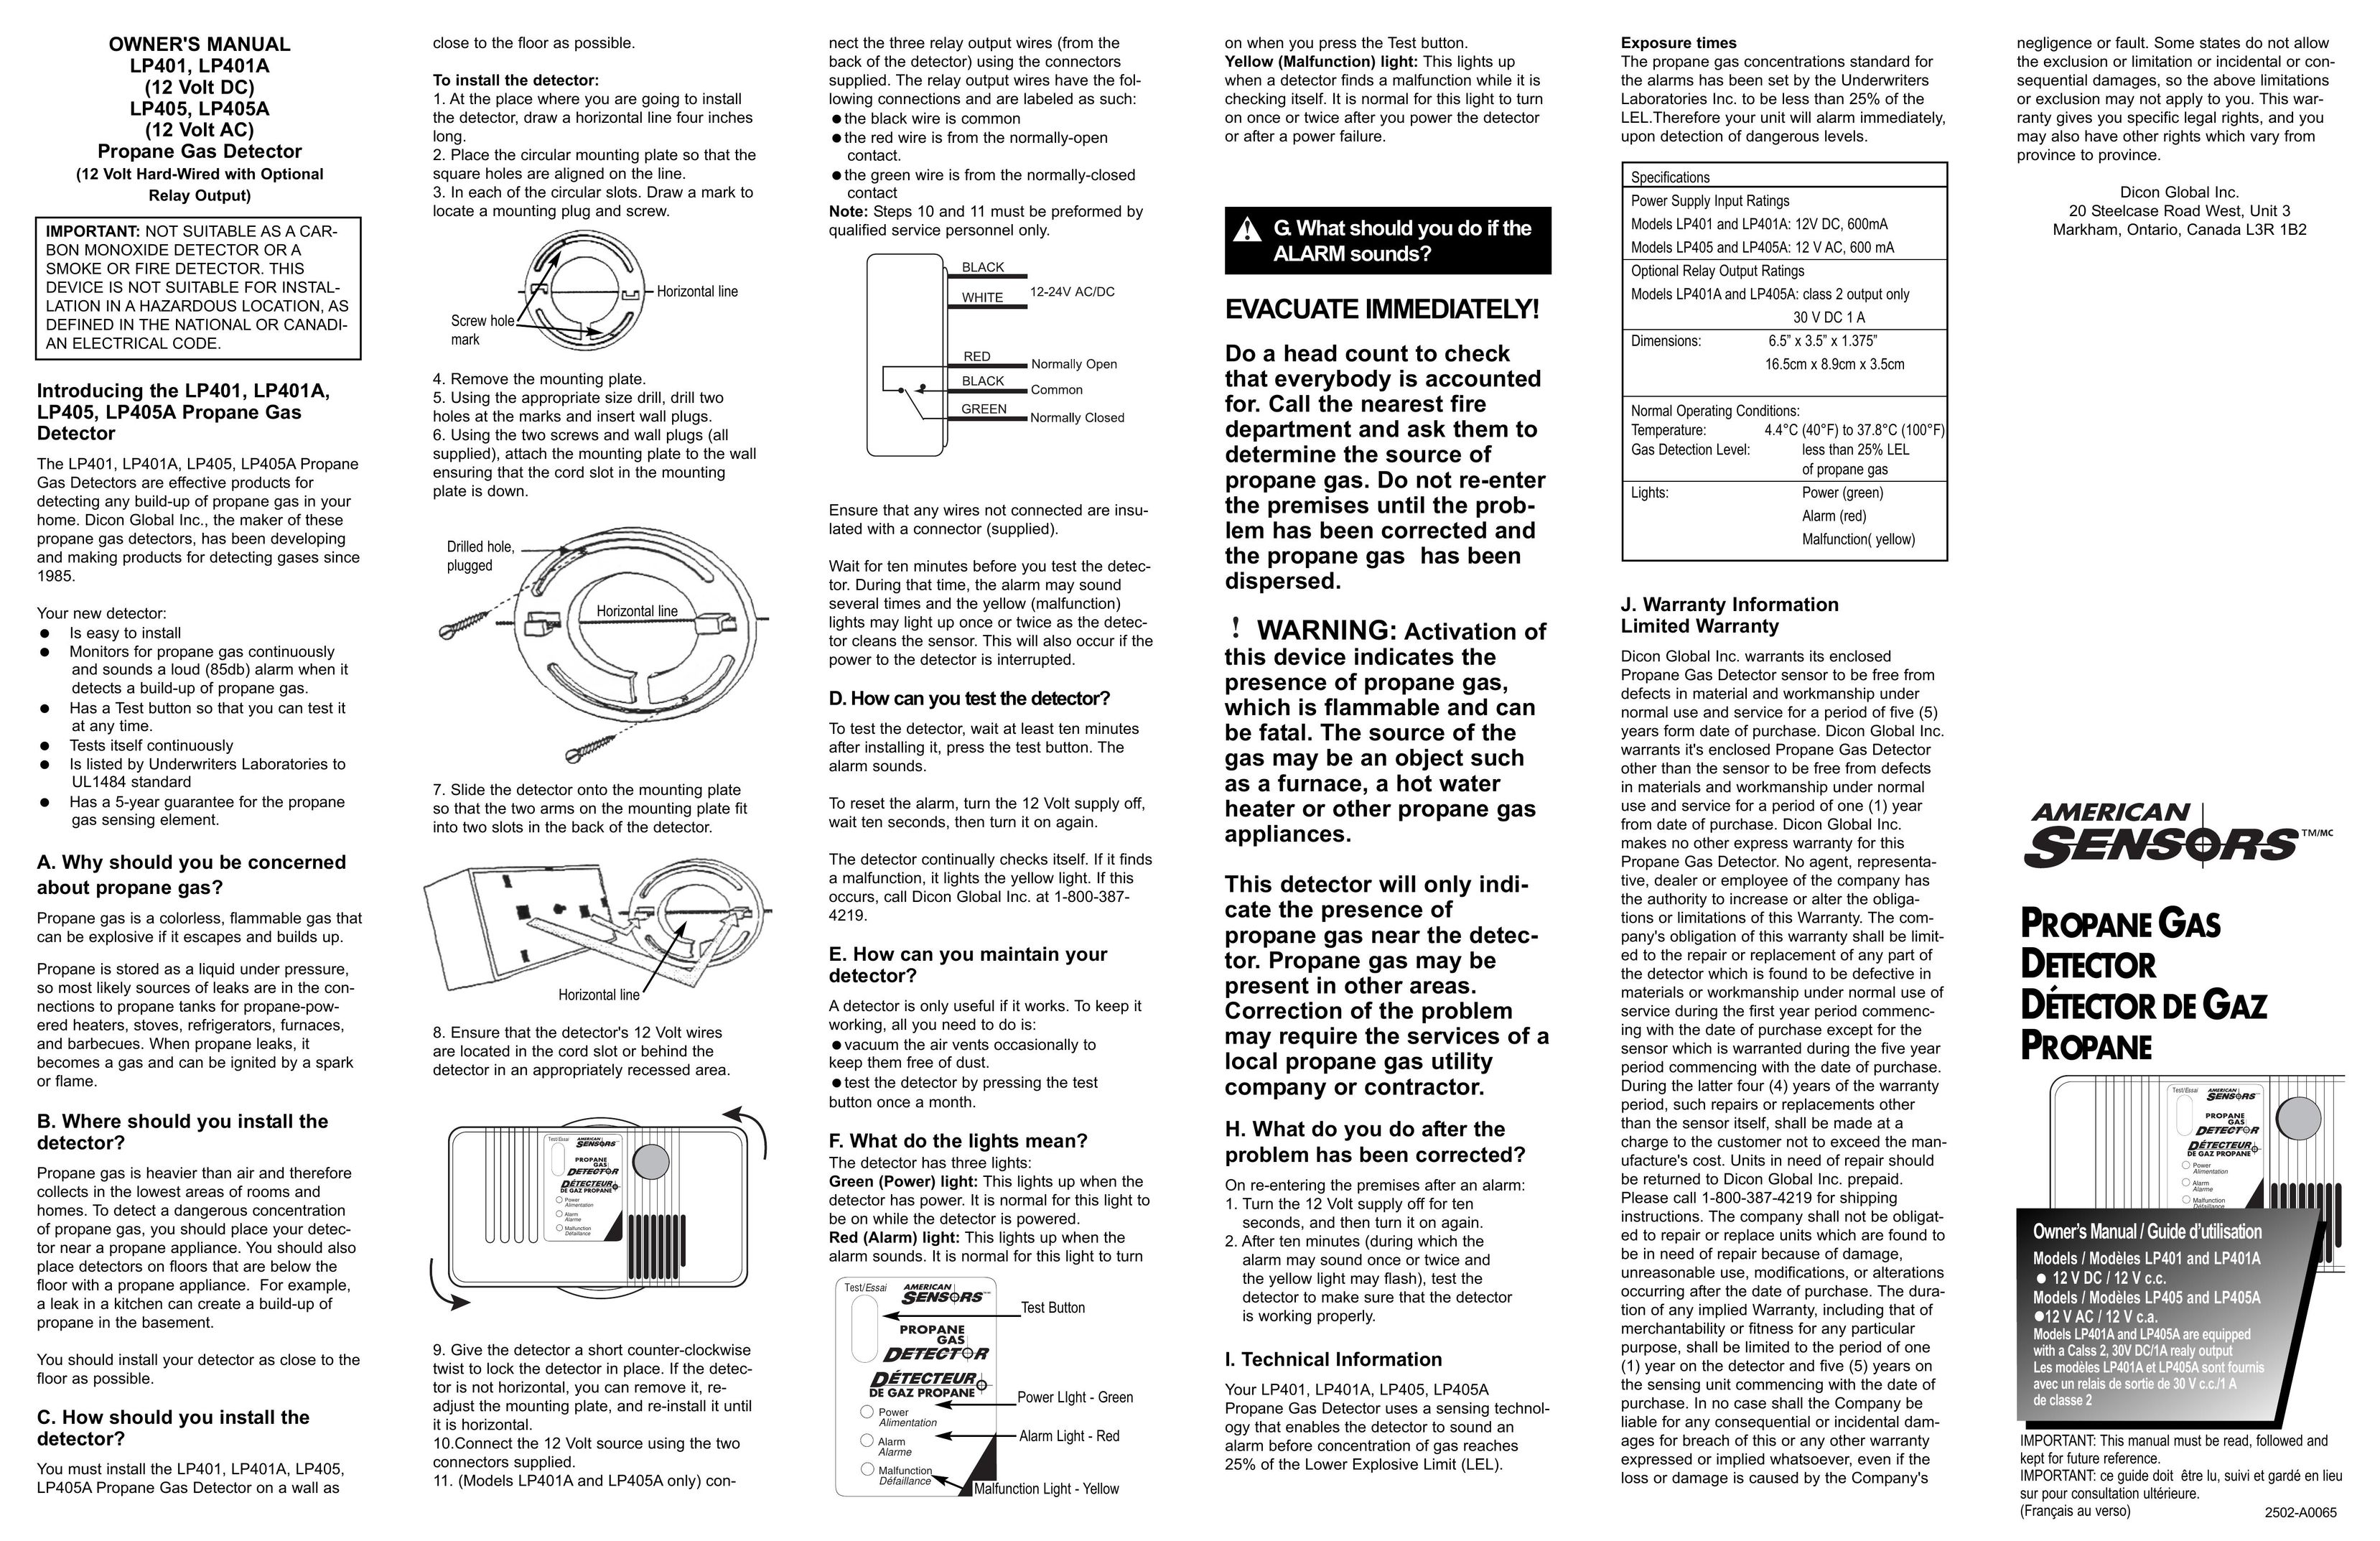 American Sensor LP401A Carbon Monoxide Alarm User Manual